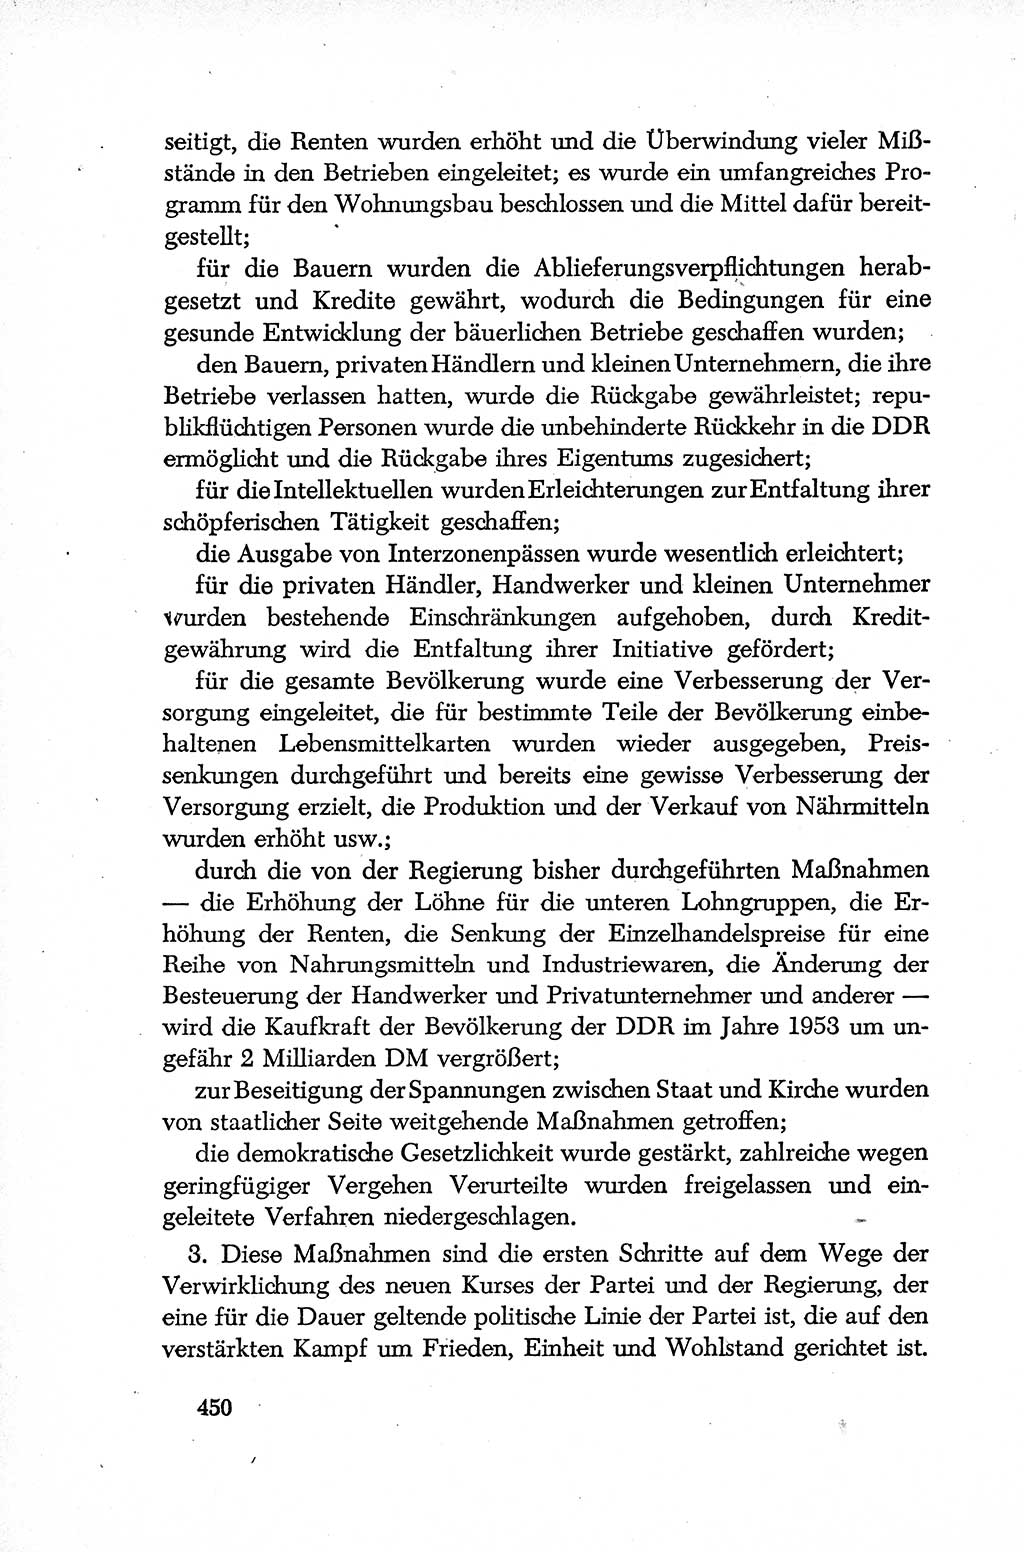 Dokumente der Sozialistischen Einheitspartei Deutschlands (SED) [Deutsche Demokratische Republik (DDR)] 1952-1953, Seite 450 (Dok. SED DDR 1952-1953, S. 450)